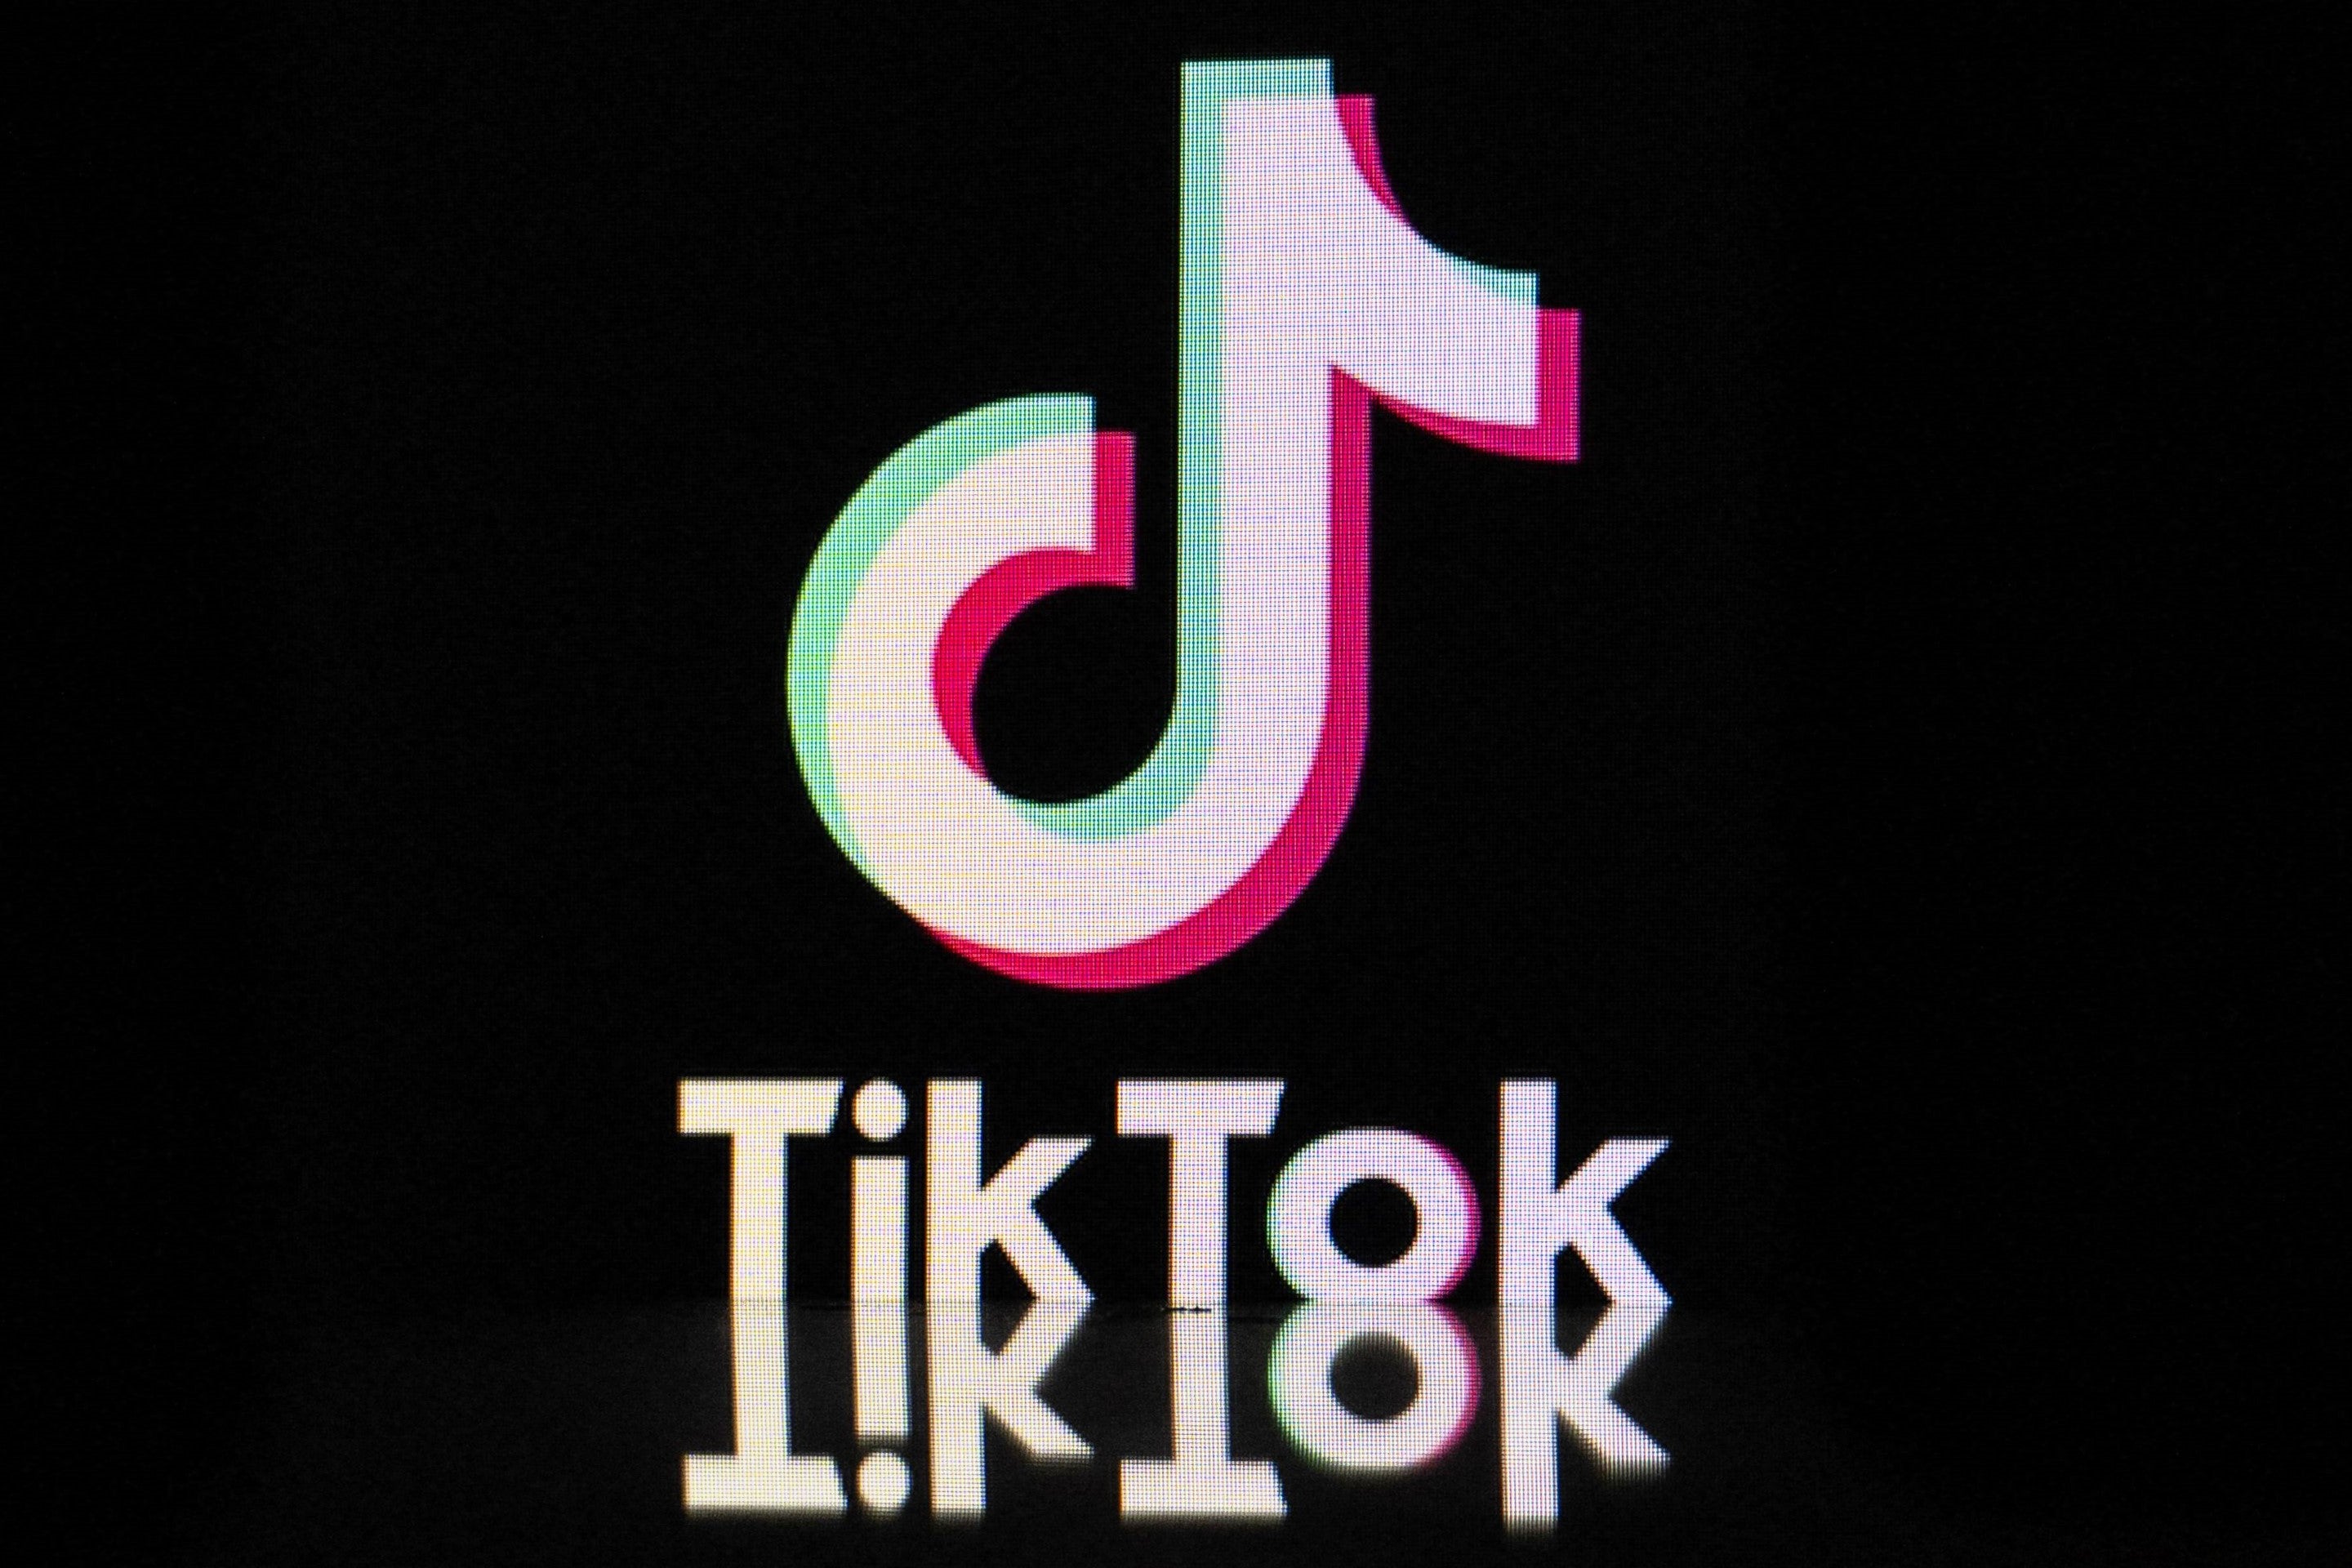 The logo for the TikTok app